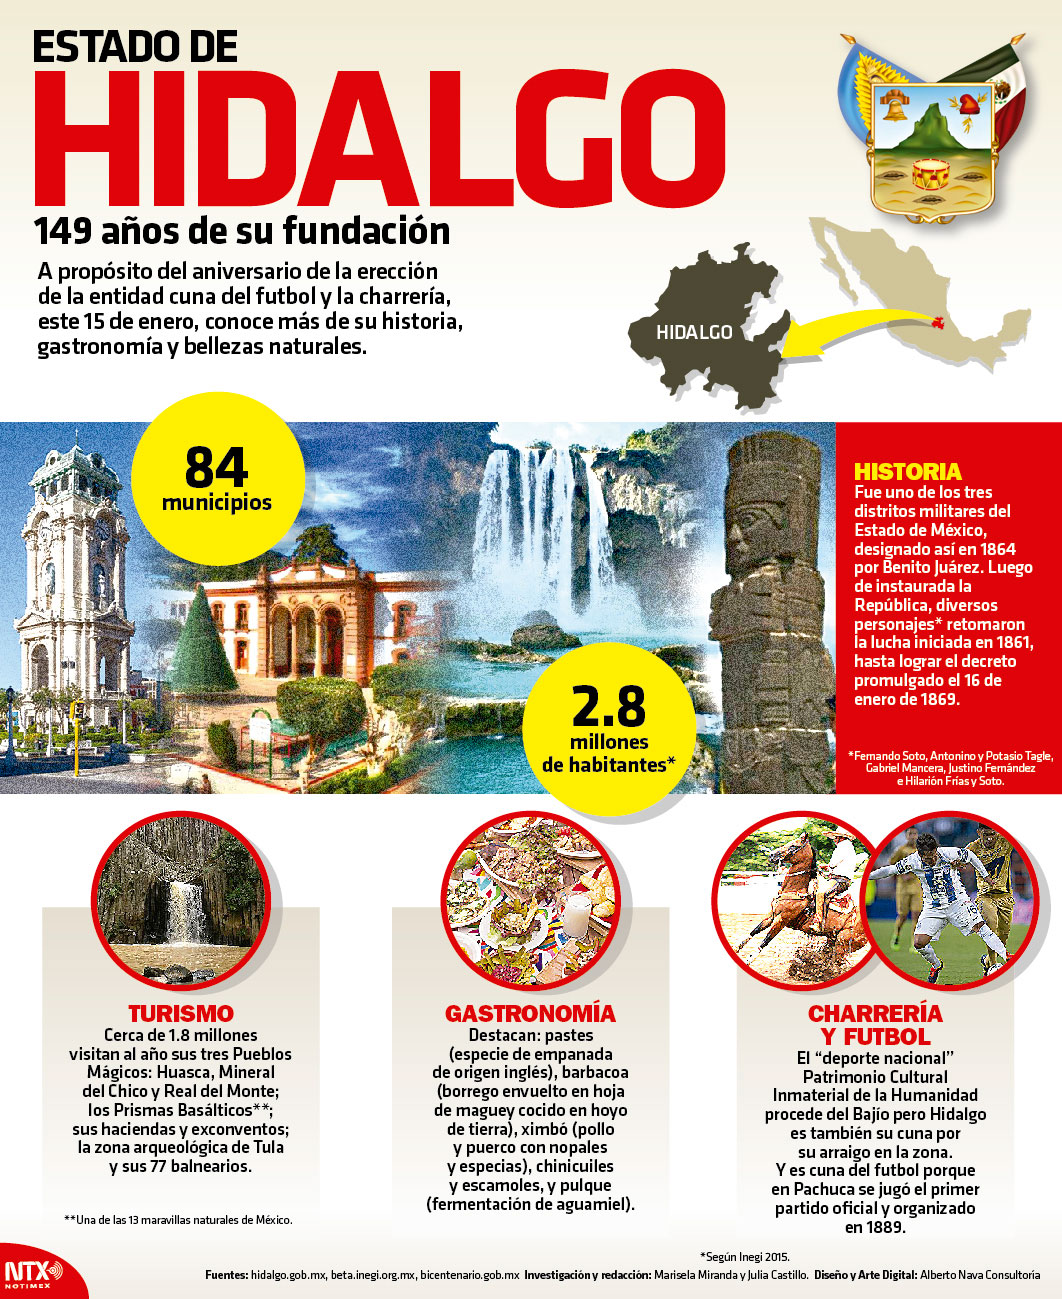 Estado de Hidalgo, 149 aos de su fundacin